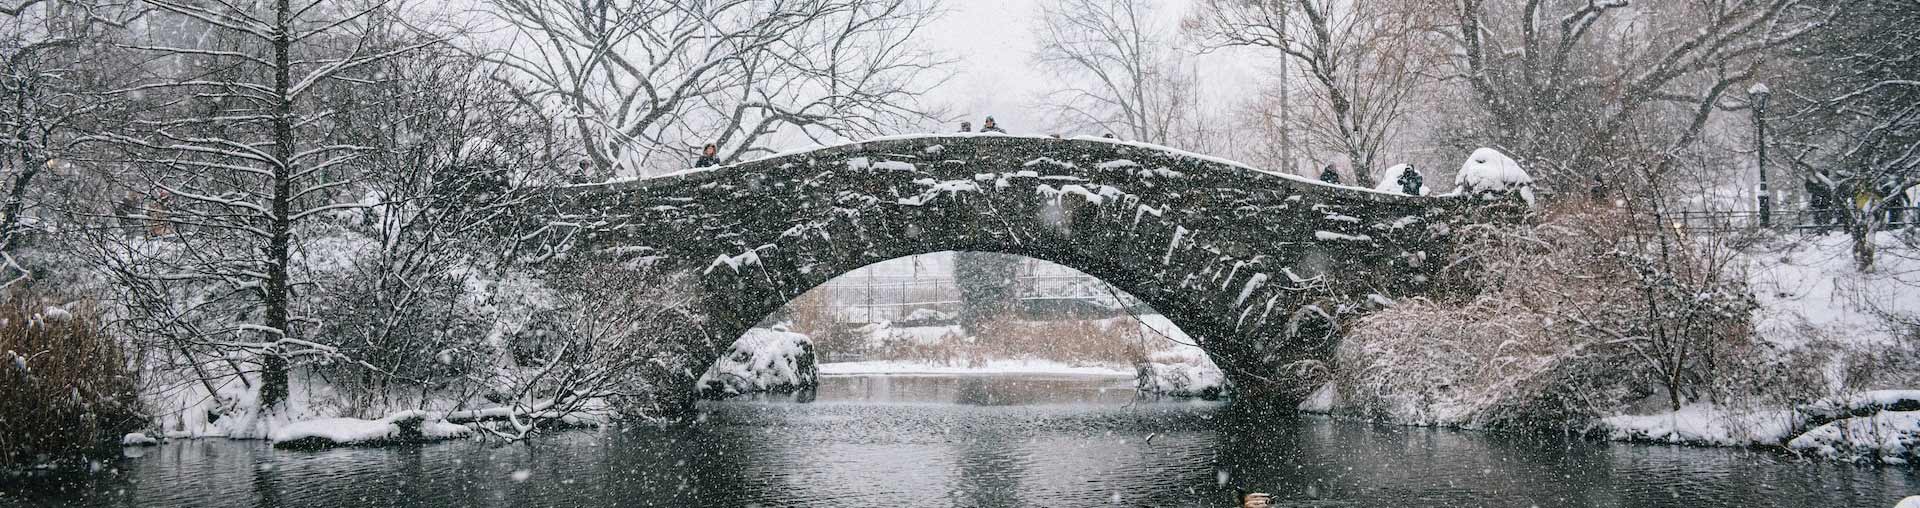 סנטרל פארק ניו יורק יורד שלג עם גשר אבן ברקע